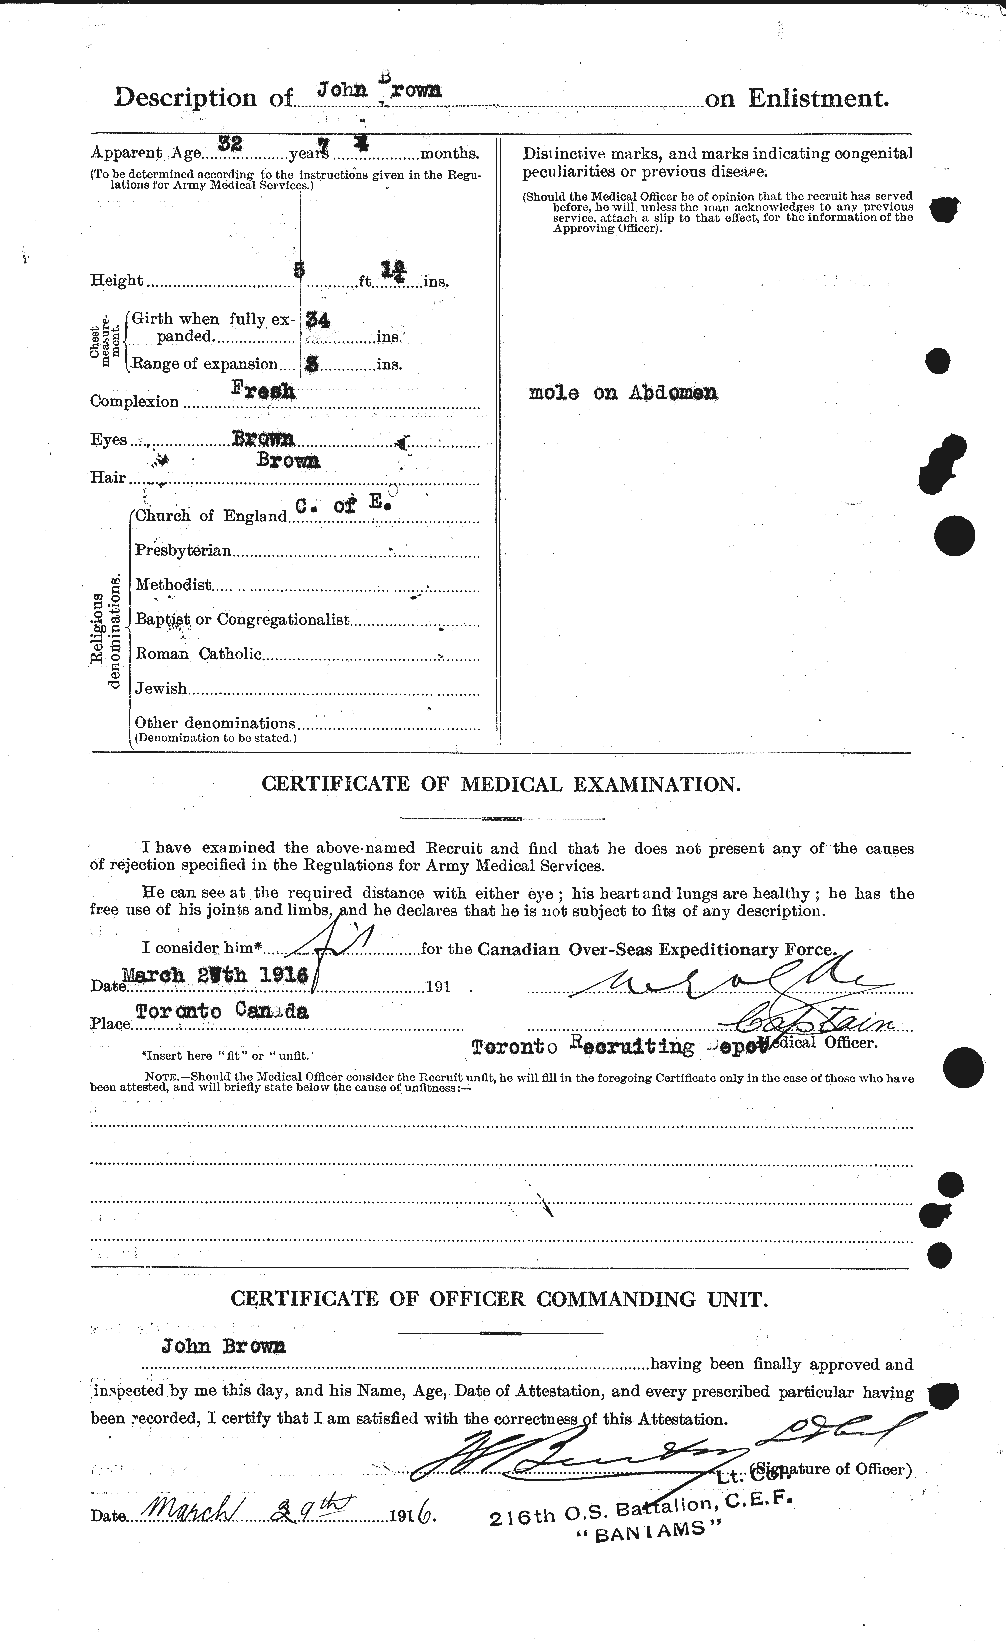 Dossiers du Personnel de la Première Guerre mondiale - CEC 264550b